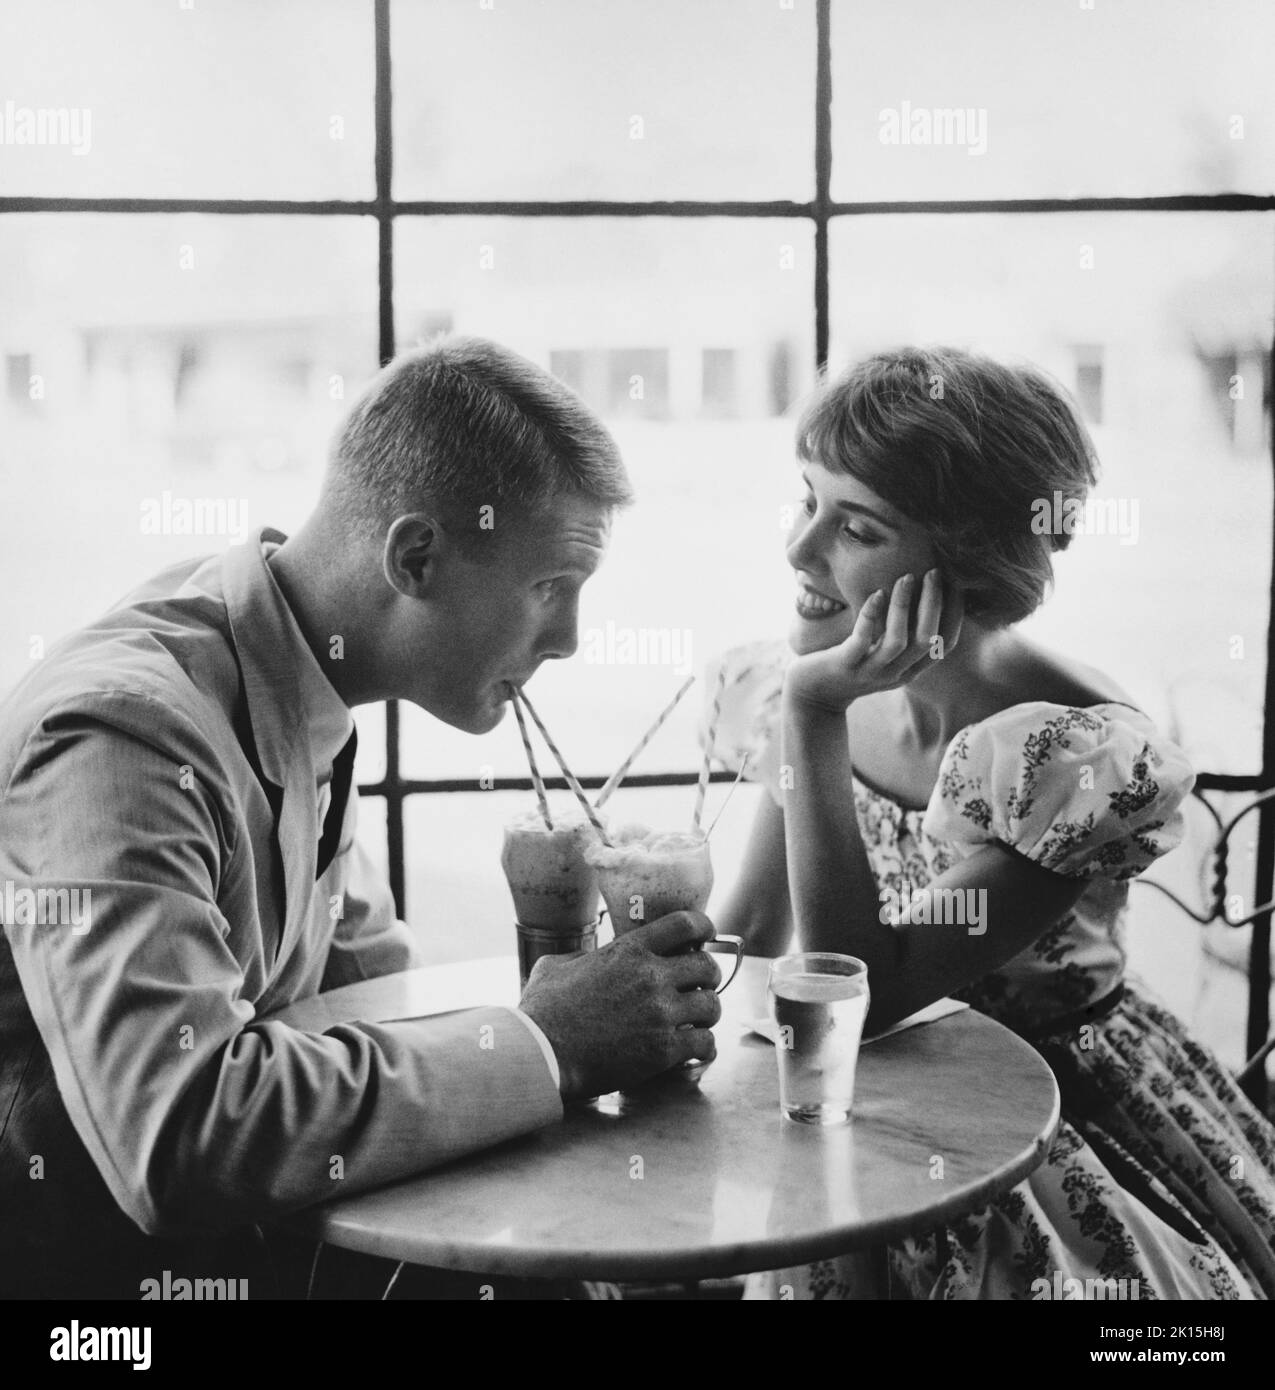 un-couple-qui-boit-des-sodas-1950s-2k15h8j.jpg